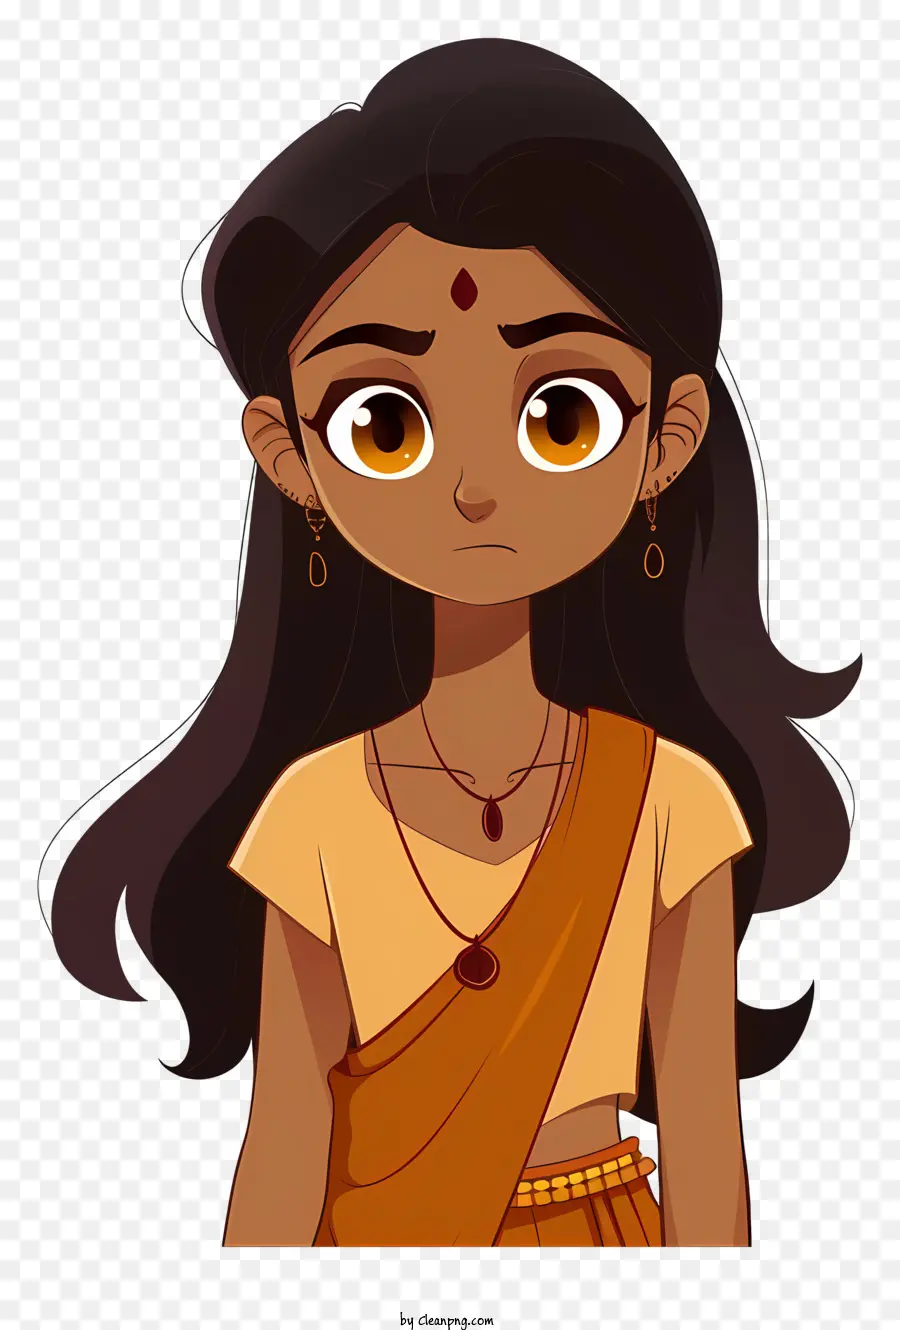 nền trắng - Cô gái hoạt hình trong sari màu cam, đôi mắt biểu cảm